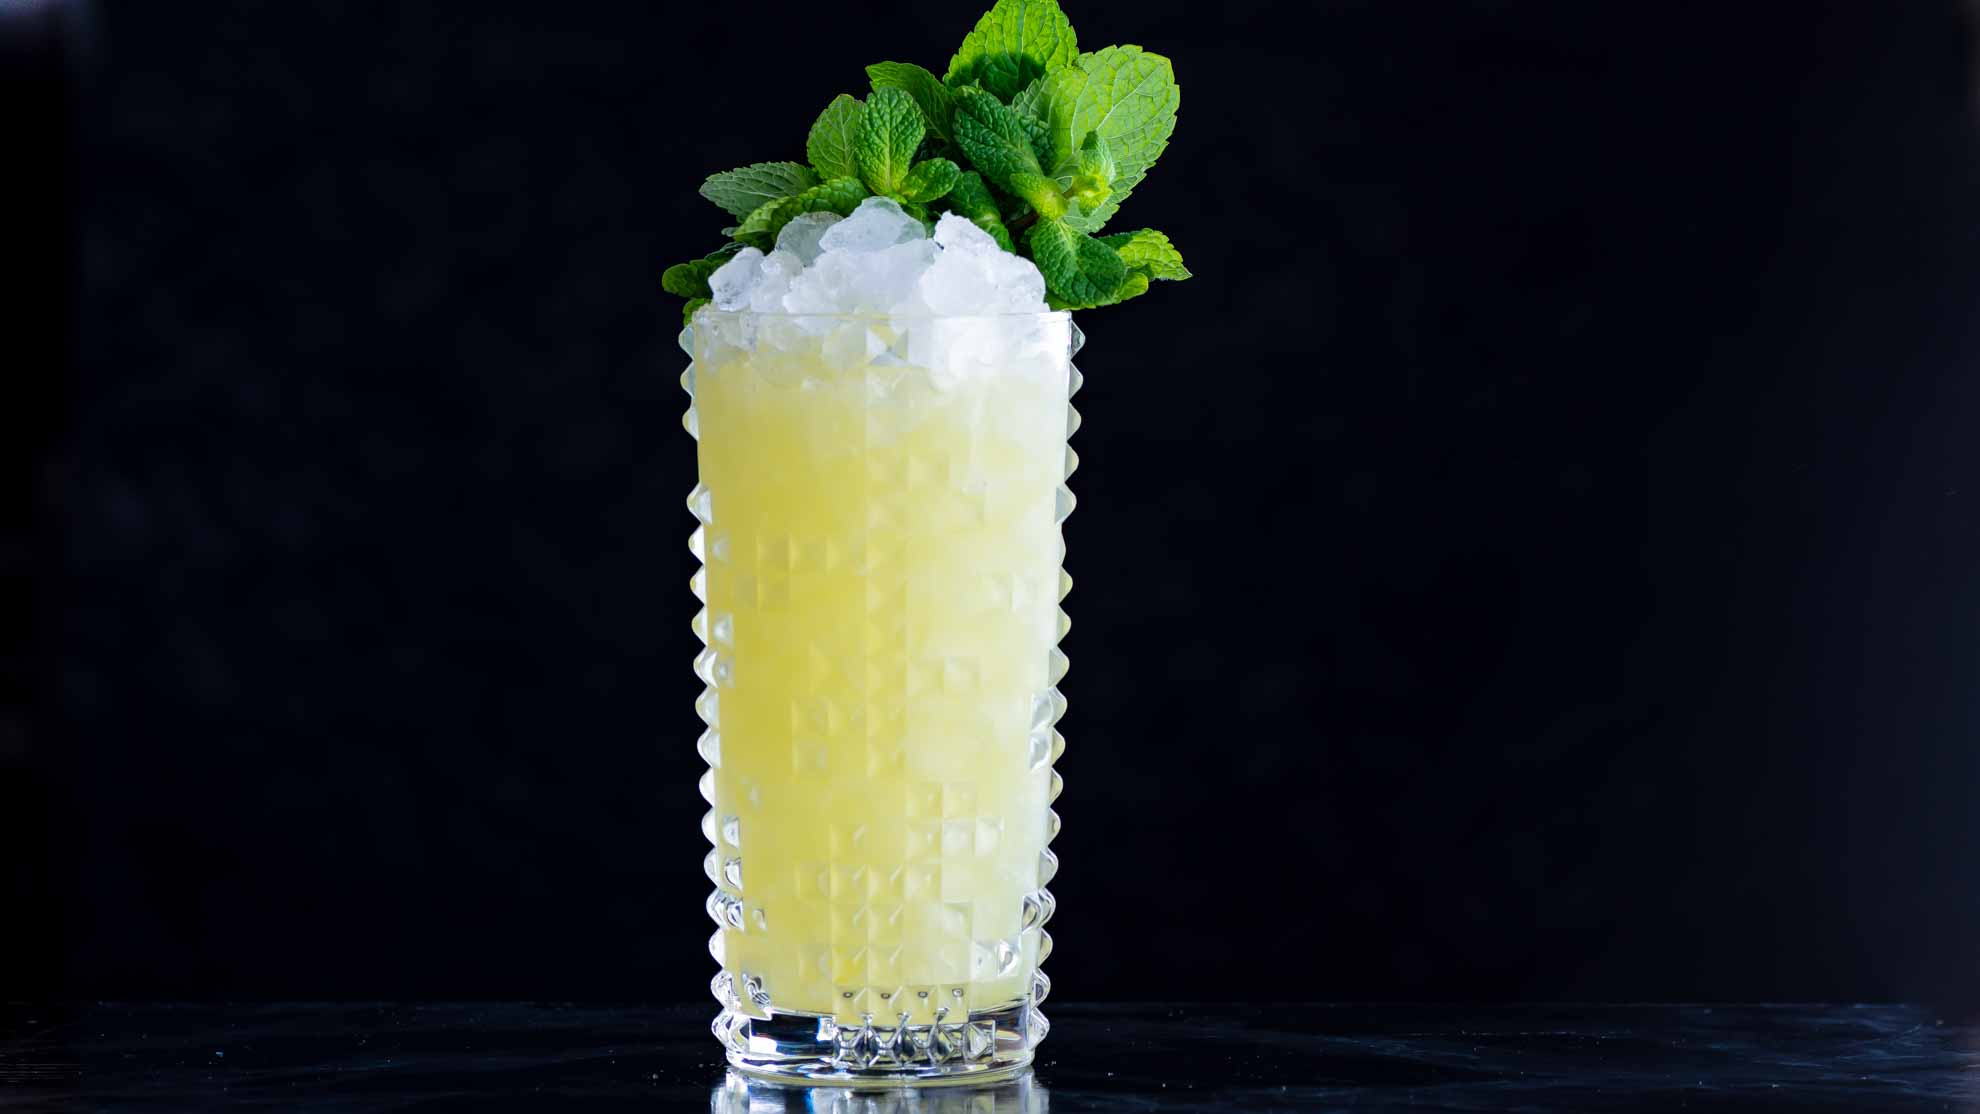 Le Cocktail Swizzle Chartreuse avec Chartreuse, Falernum et jus d'ananas.